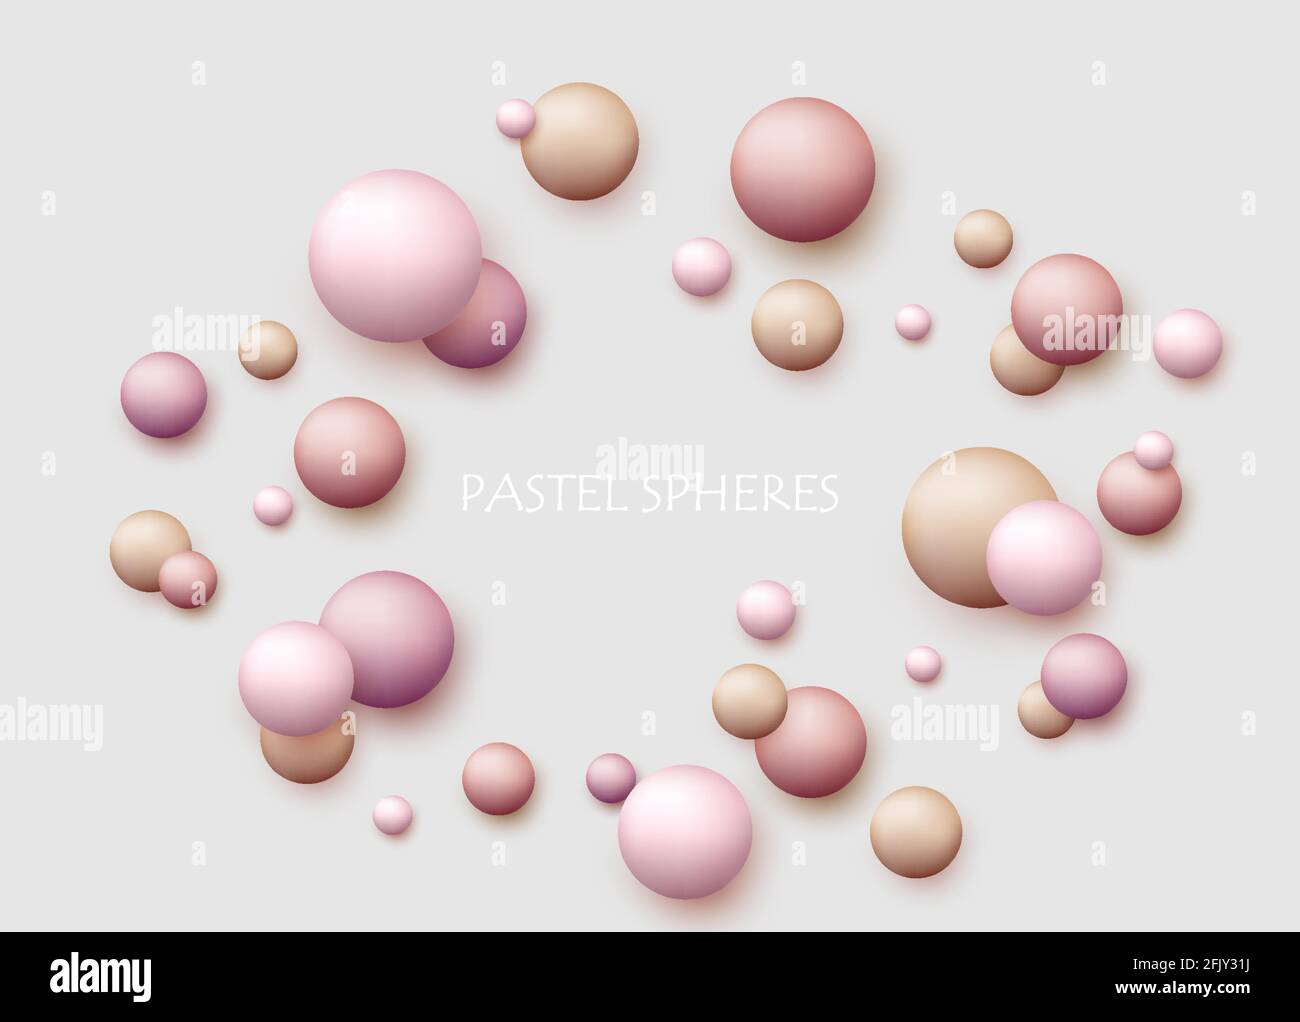 Vektor dynamischen Hintergrund mit bunten realistischen 3d-Kugeln. Runde Kugel in Perlen Pastellfarben auf dem Hintergrund. Puderbälle, Fundament, Pulver, erröten Stock Vektor